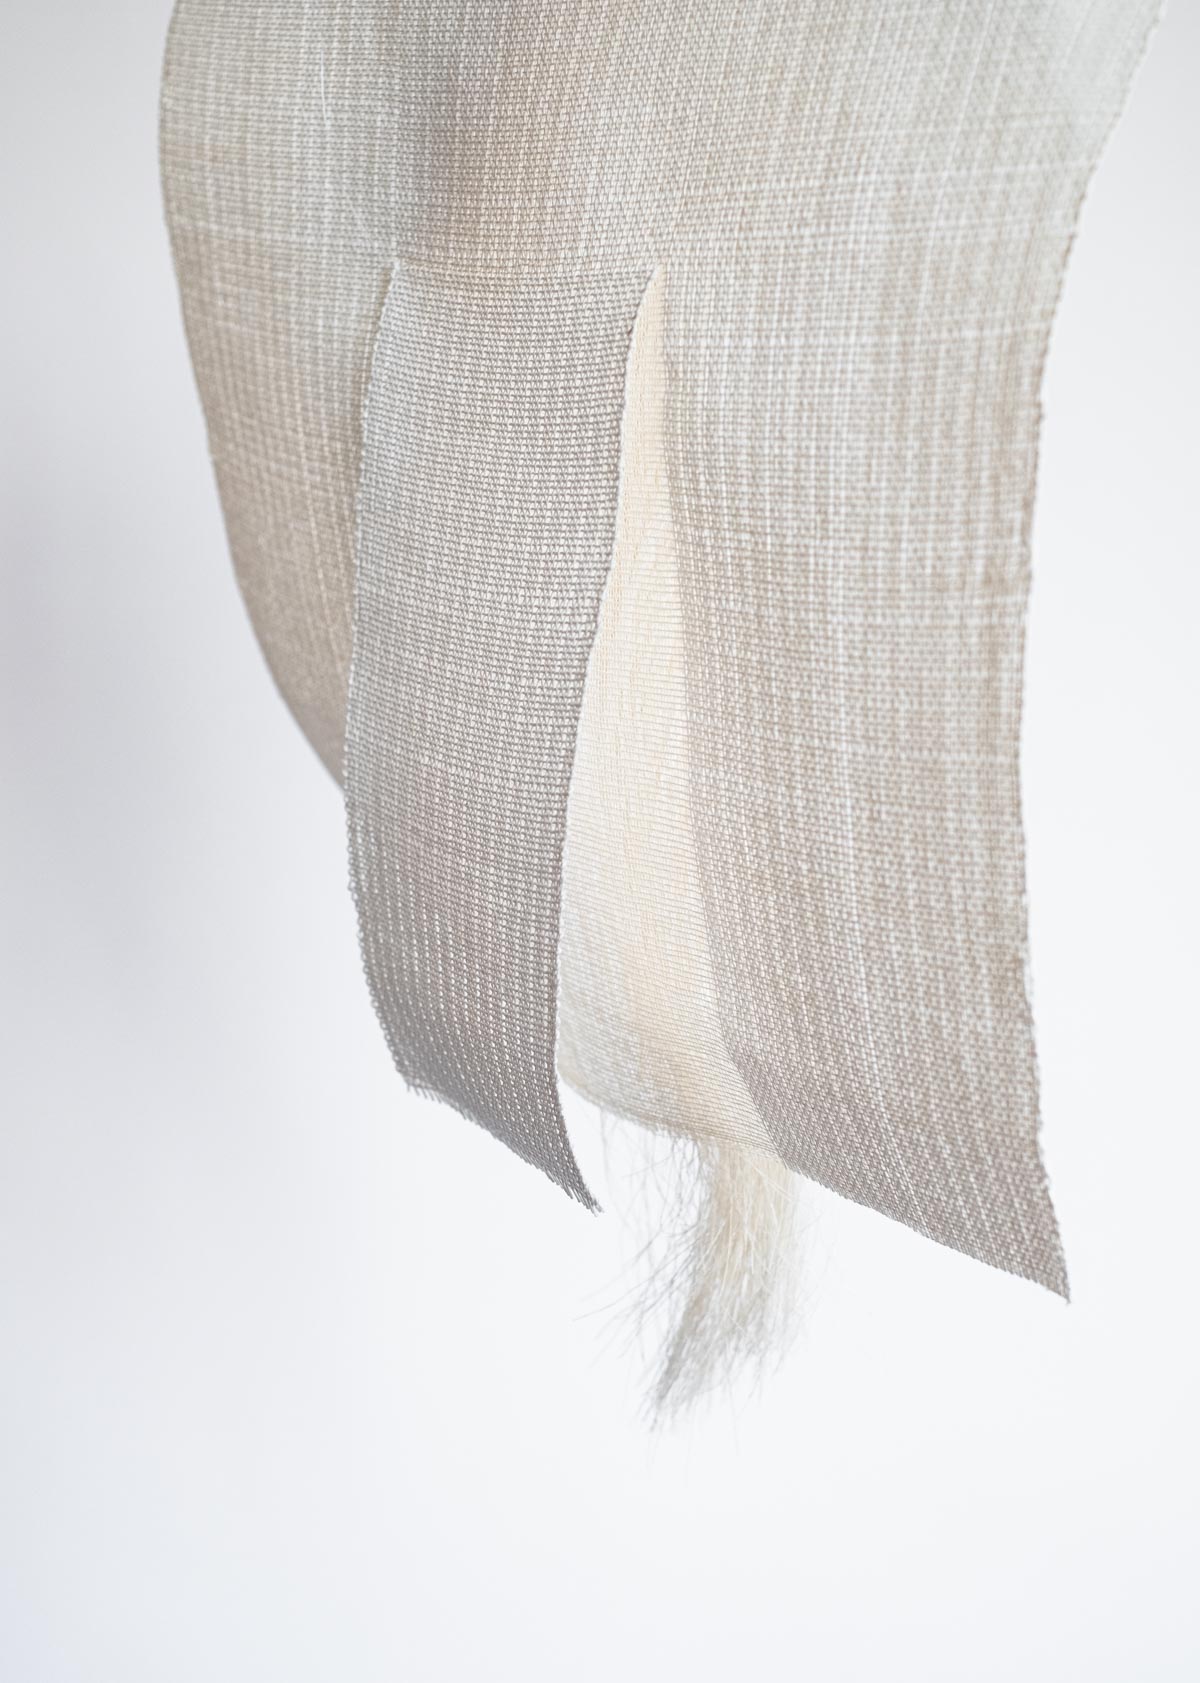 Sportello Riverso Con Coda (2021) 31,5x29x2 cm Japanese paper yarn